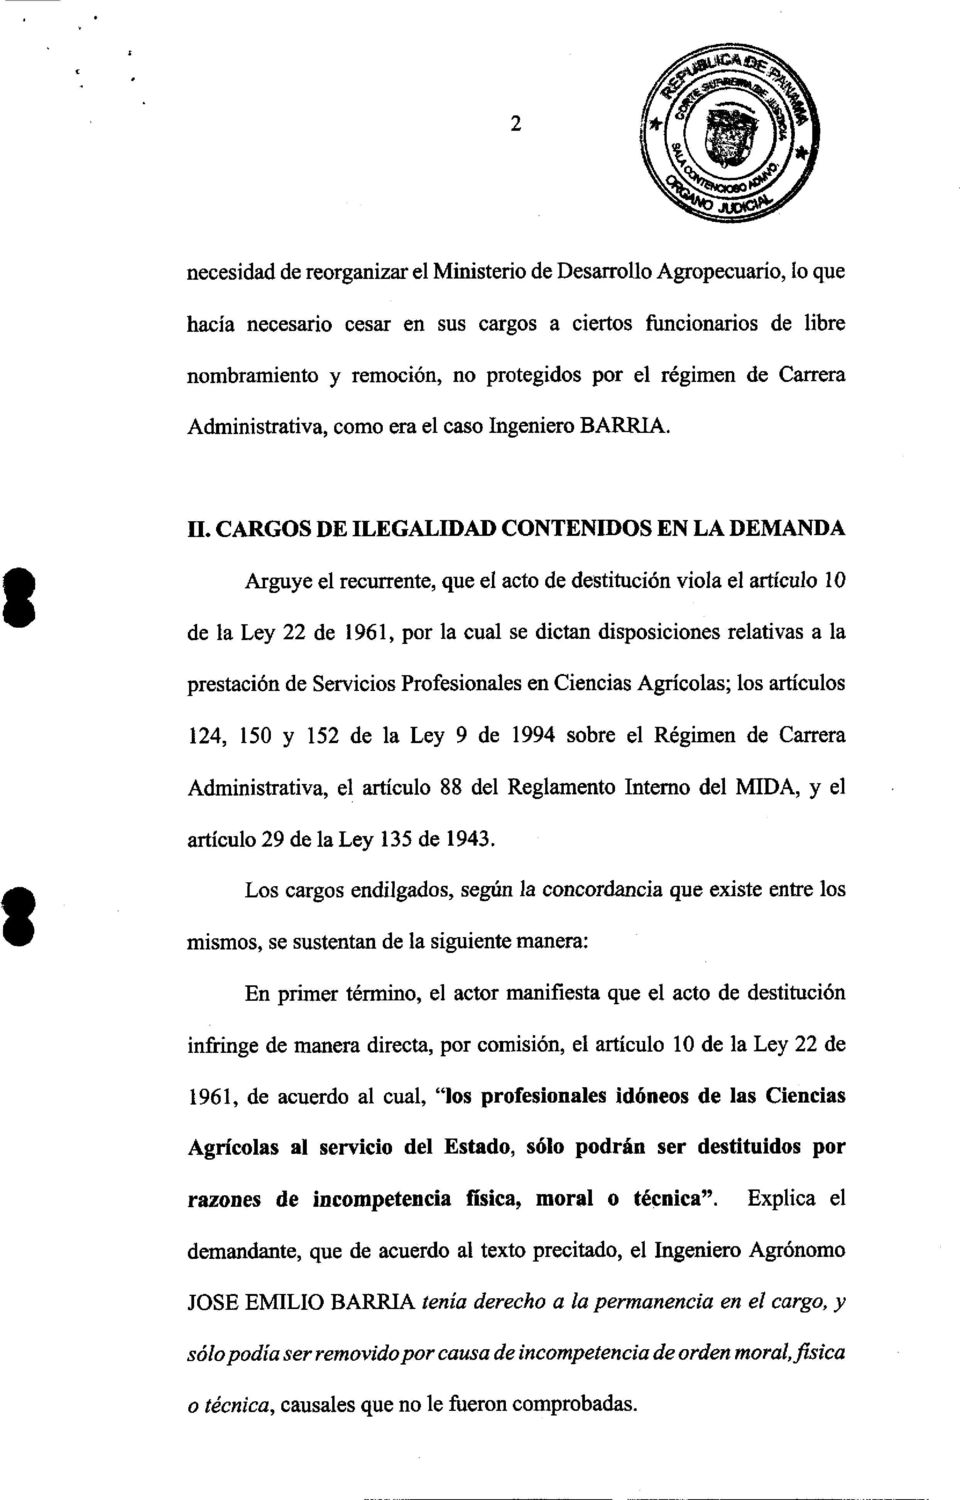 CARGOS DE ILEGALIDAD CONTENIDOS EN LA DEMANDA Arguy el recurrente, que el acto de destitución viola el artículo 10 de la Ley 22 de 1961, por la cual se dictan disposiciones relativas a la prestación